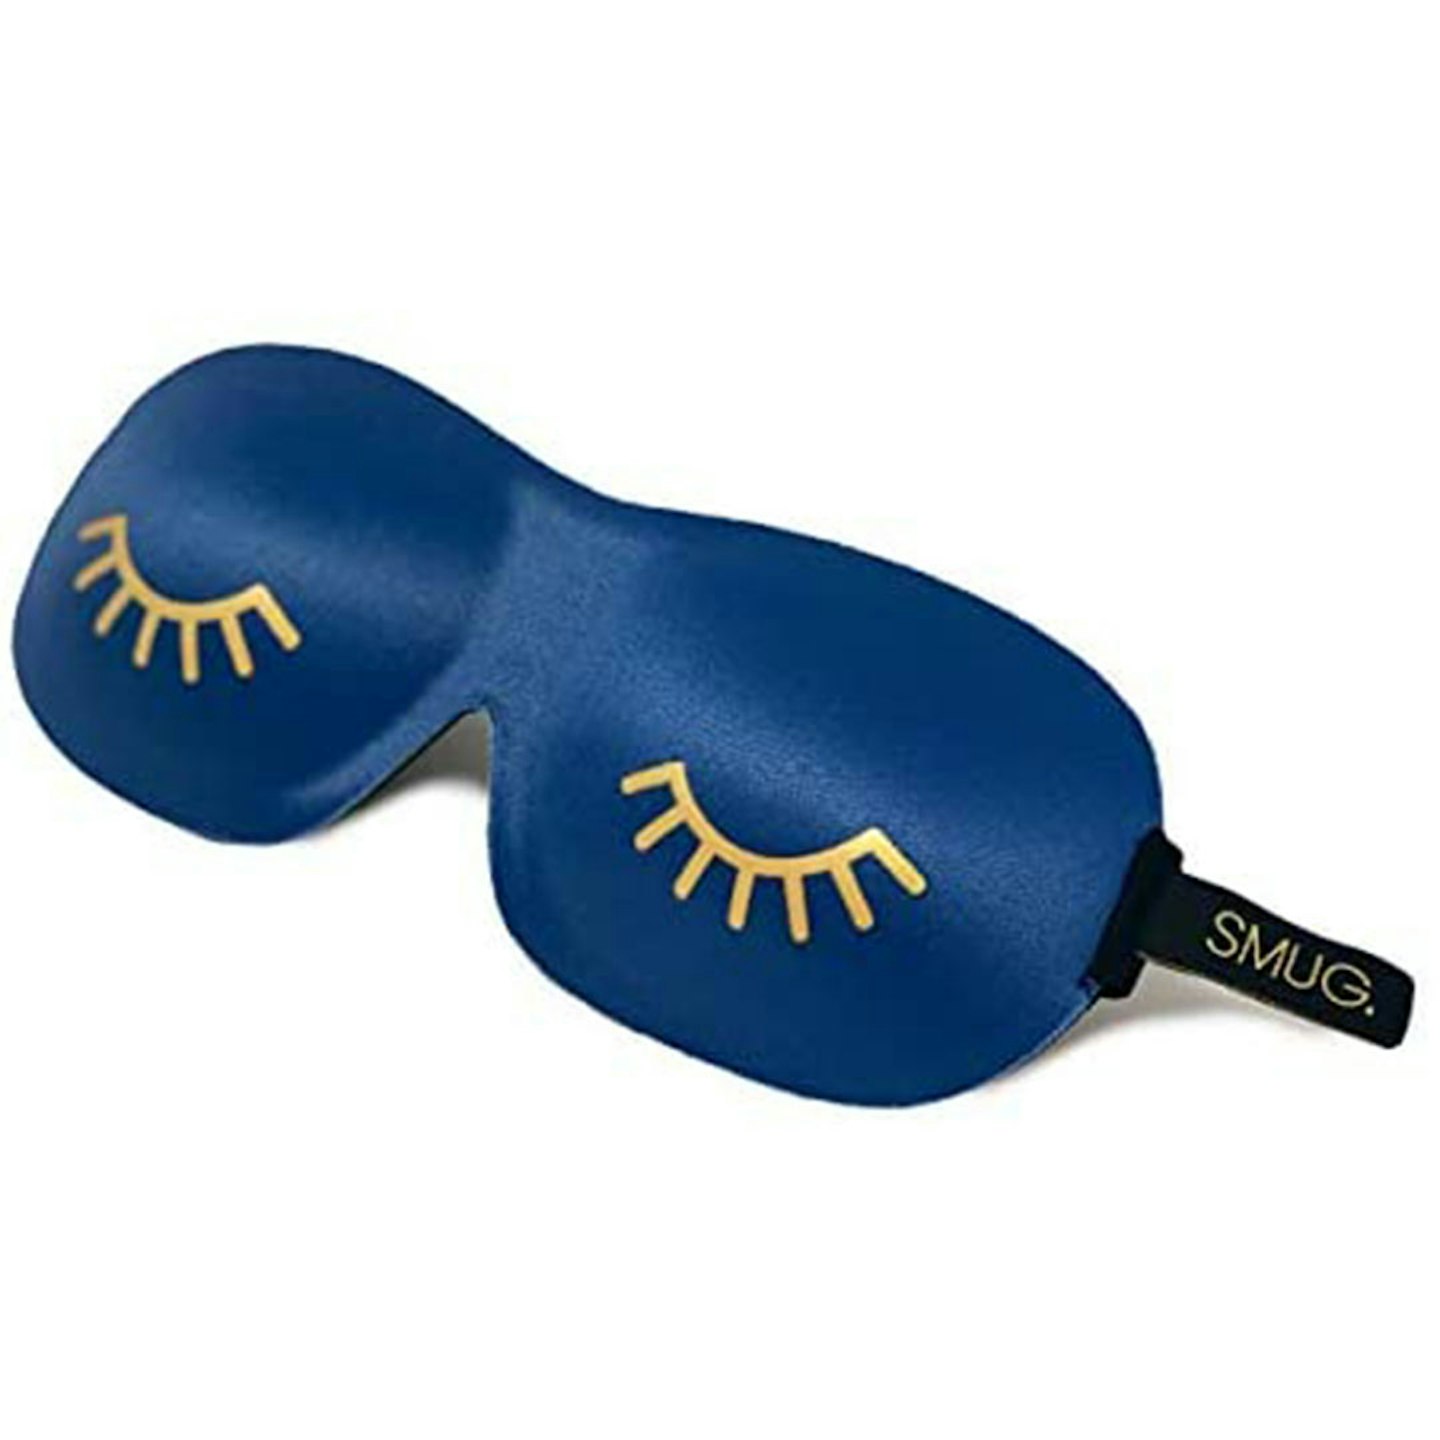 Best sleep mask: SMUG Active Eyelash Friendly Contoured Sports Therapy